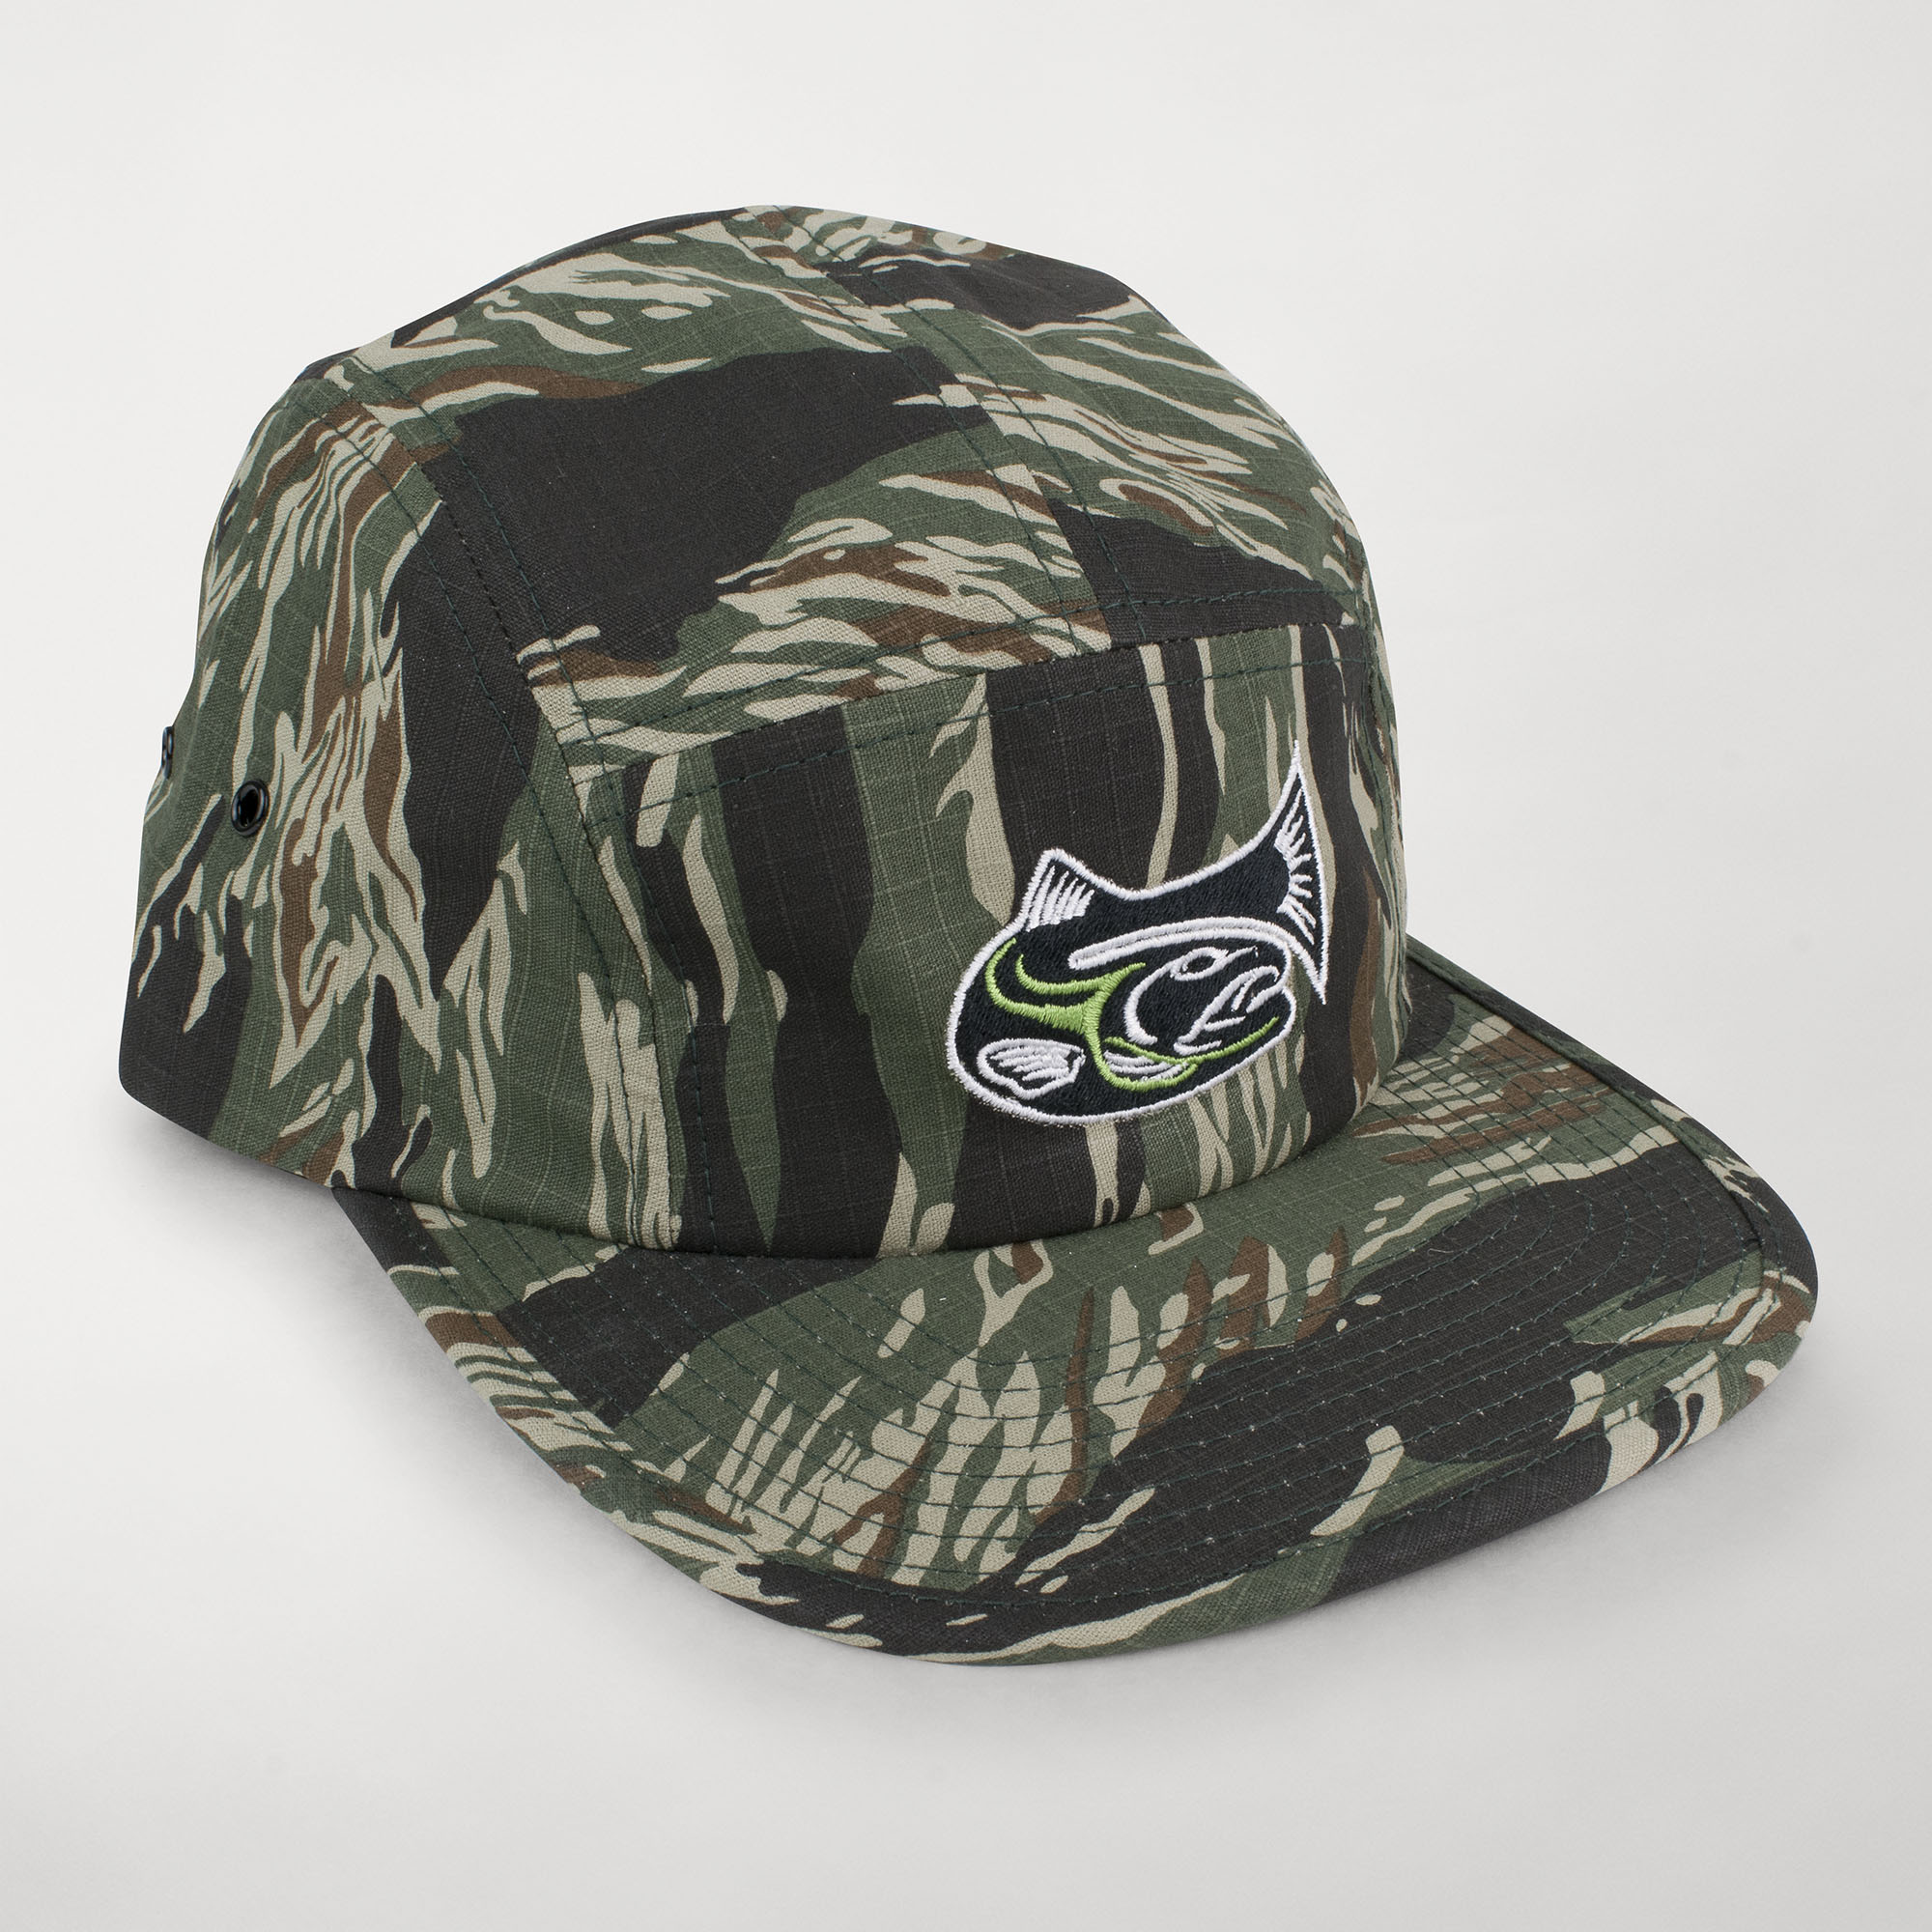 Drifthook Camper Cap—Camo with Green Logo - Drifthook